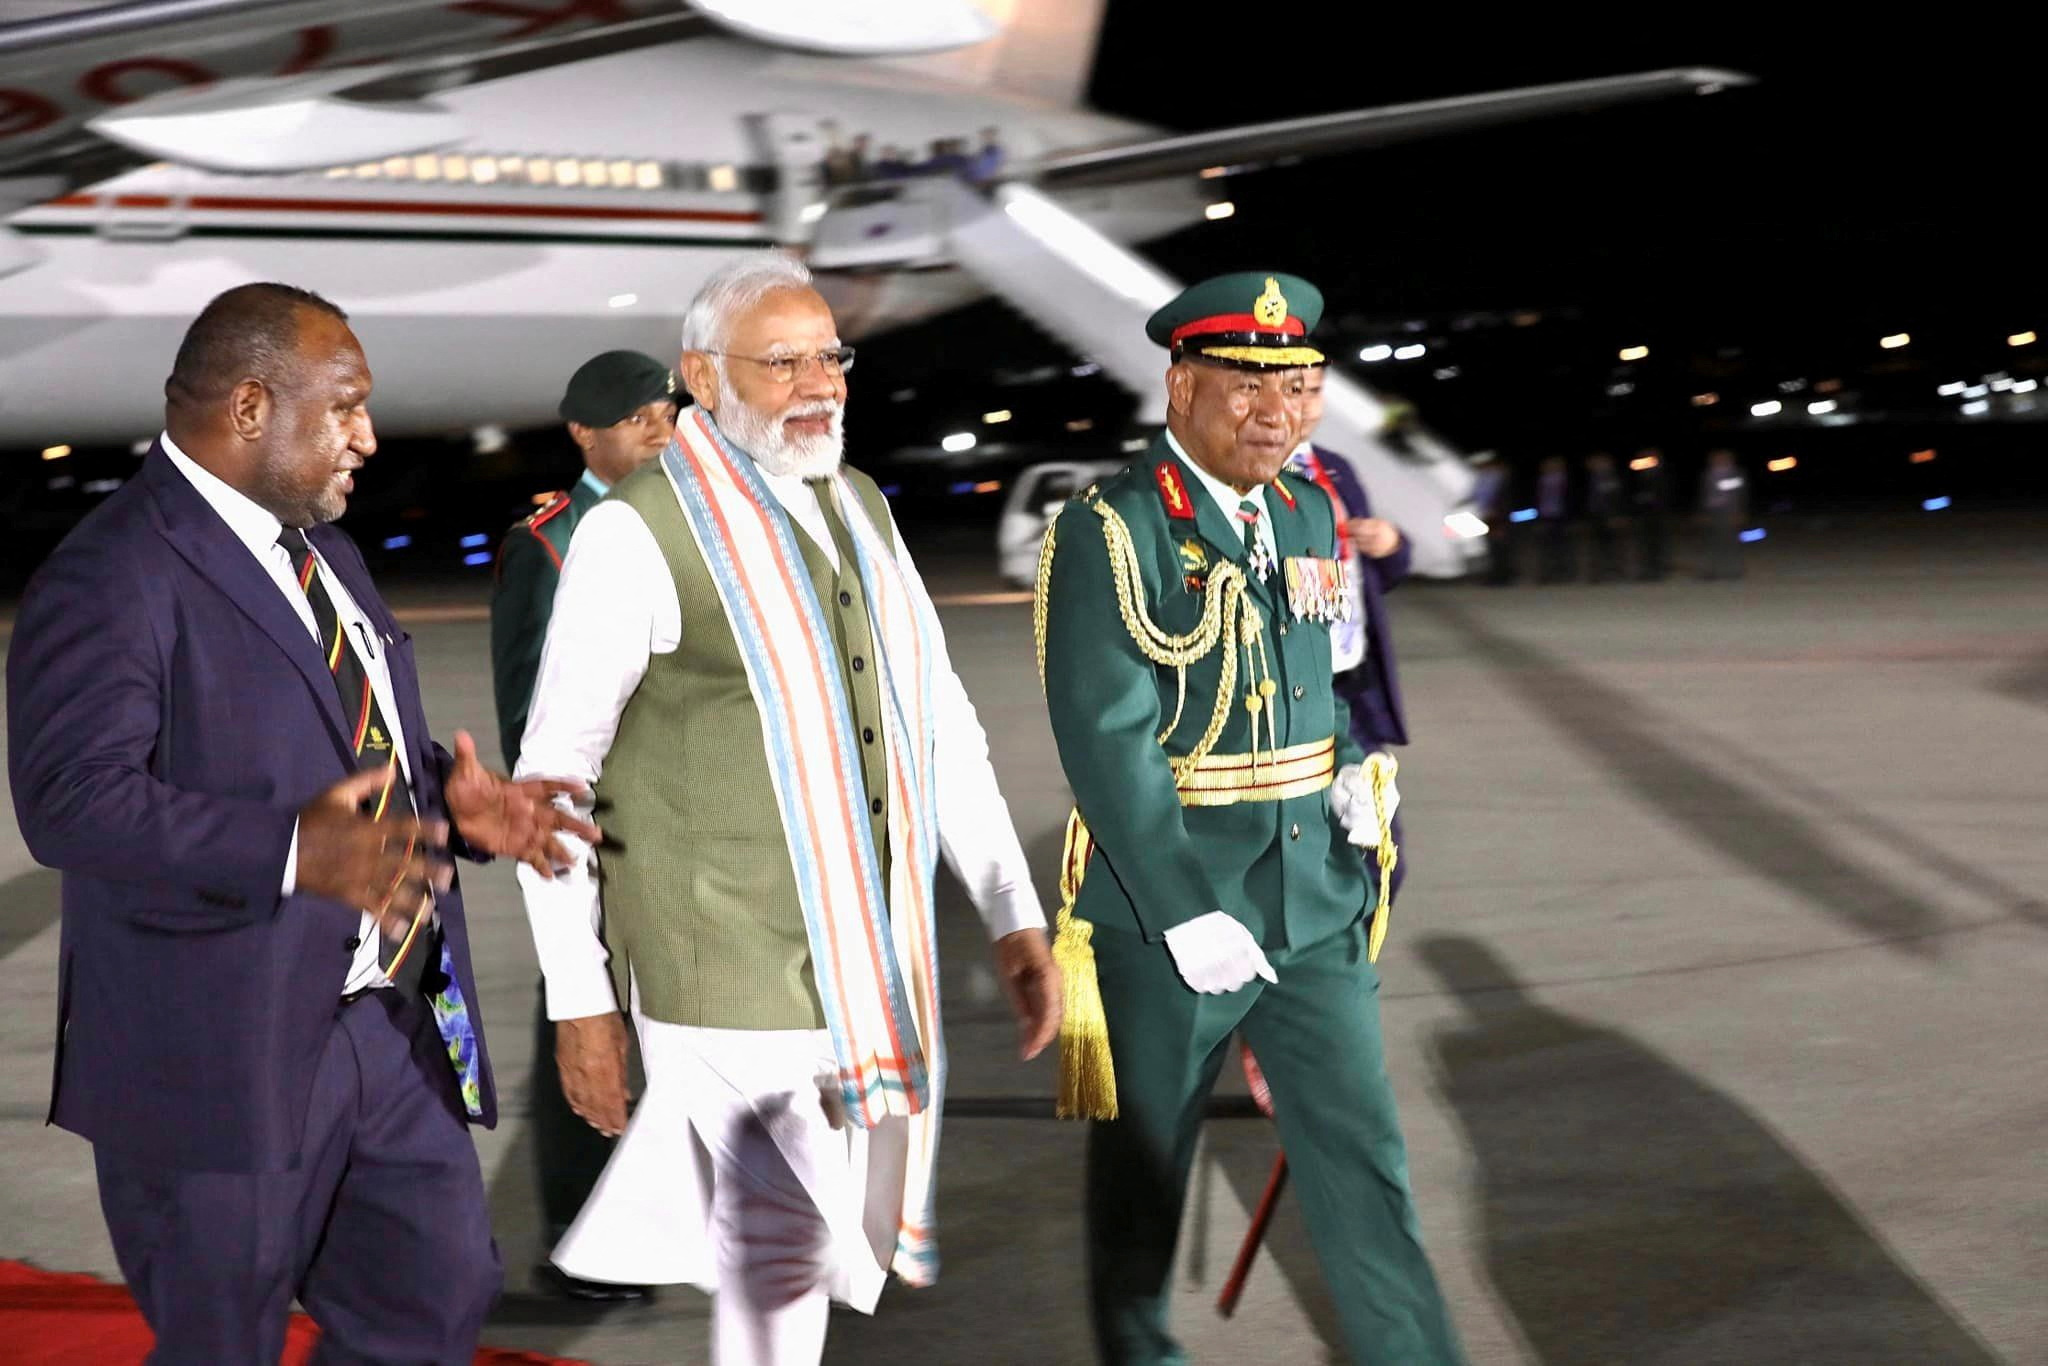 पापुआ न्यू गिनी के जैक्सन अंतरराष्ट्रीय हवाई अड्डे पर पापुआ न्यू गिनी के प्रधान मंत्री ने भारत के प्रधान मंत्री मोदी की अगवानी की